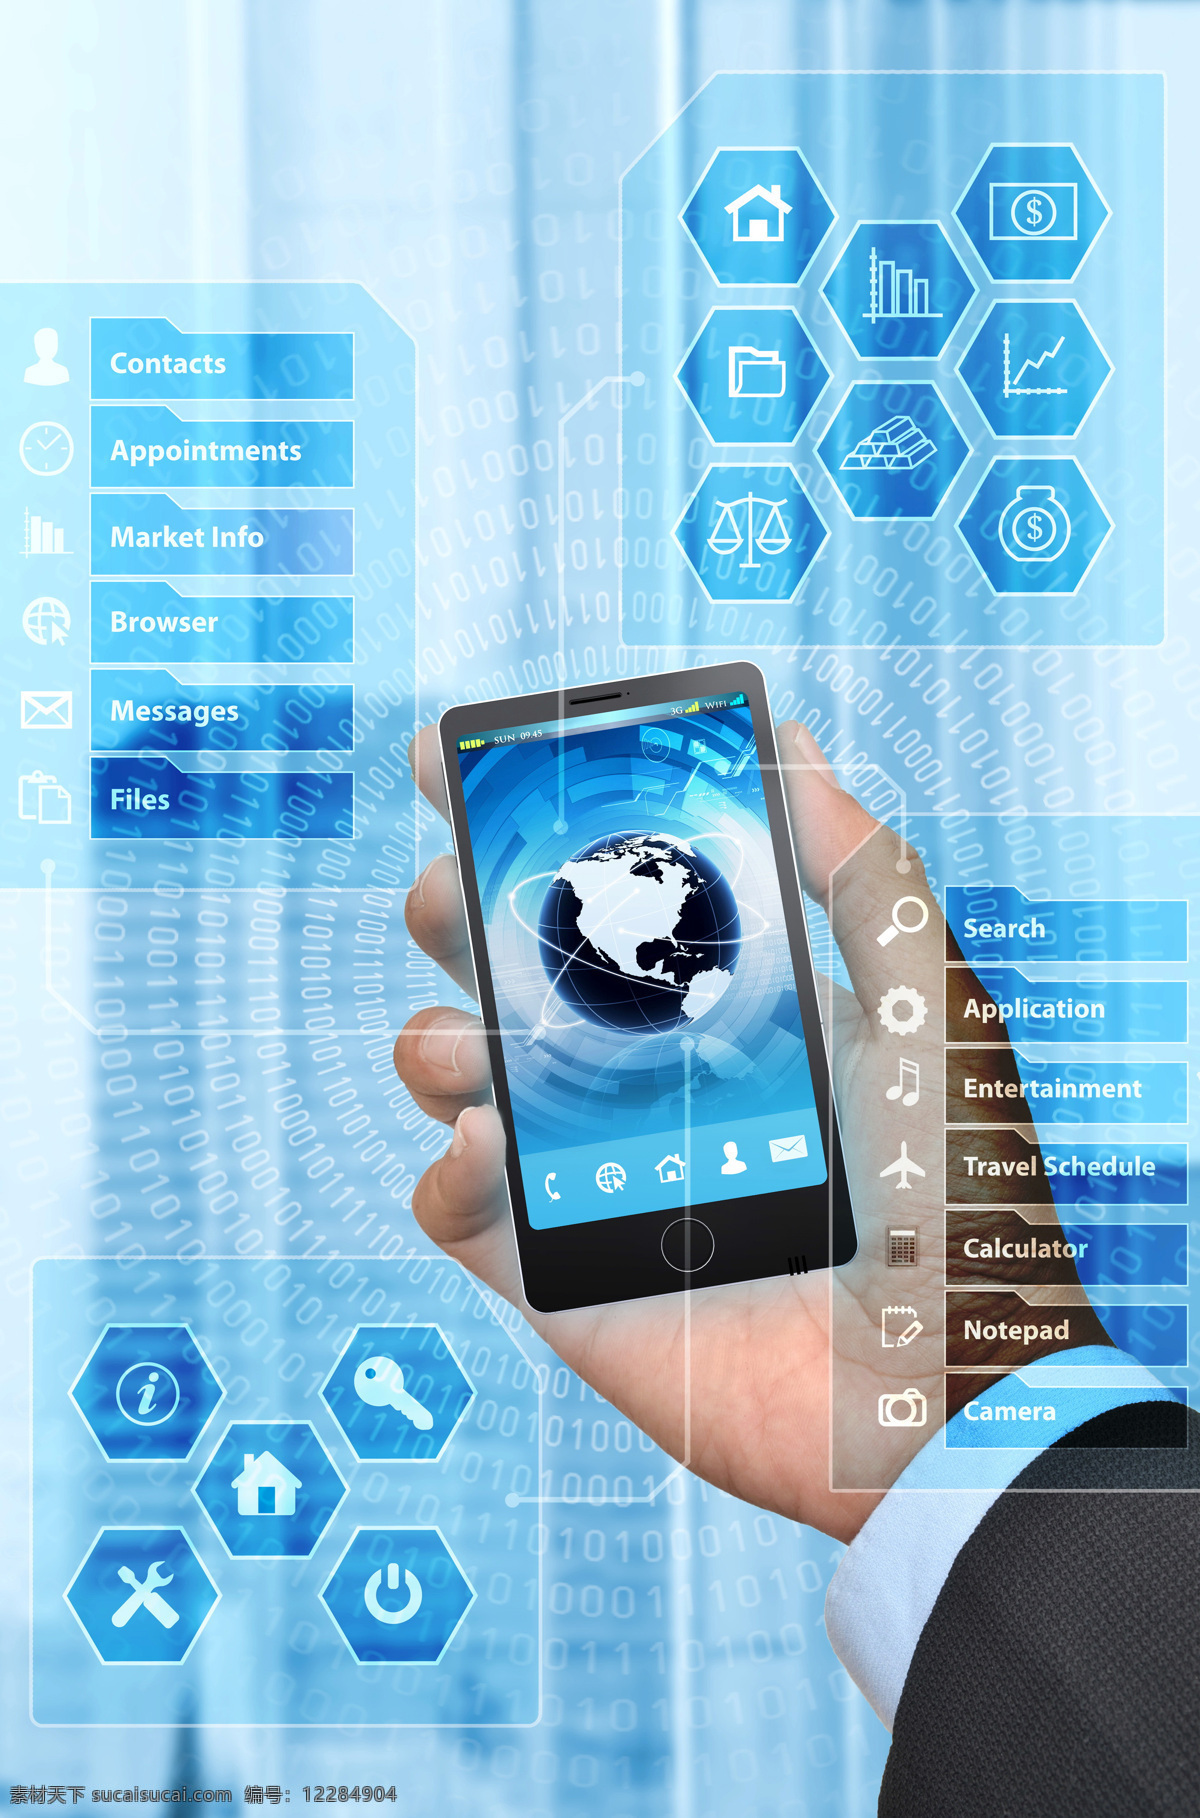 蓝色 图标 手中 触 屏 手机 蓝色图标 男人的手 触屏手机 代码 手机图片 现代科技